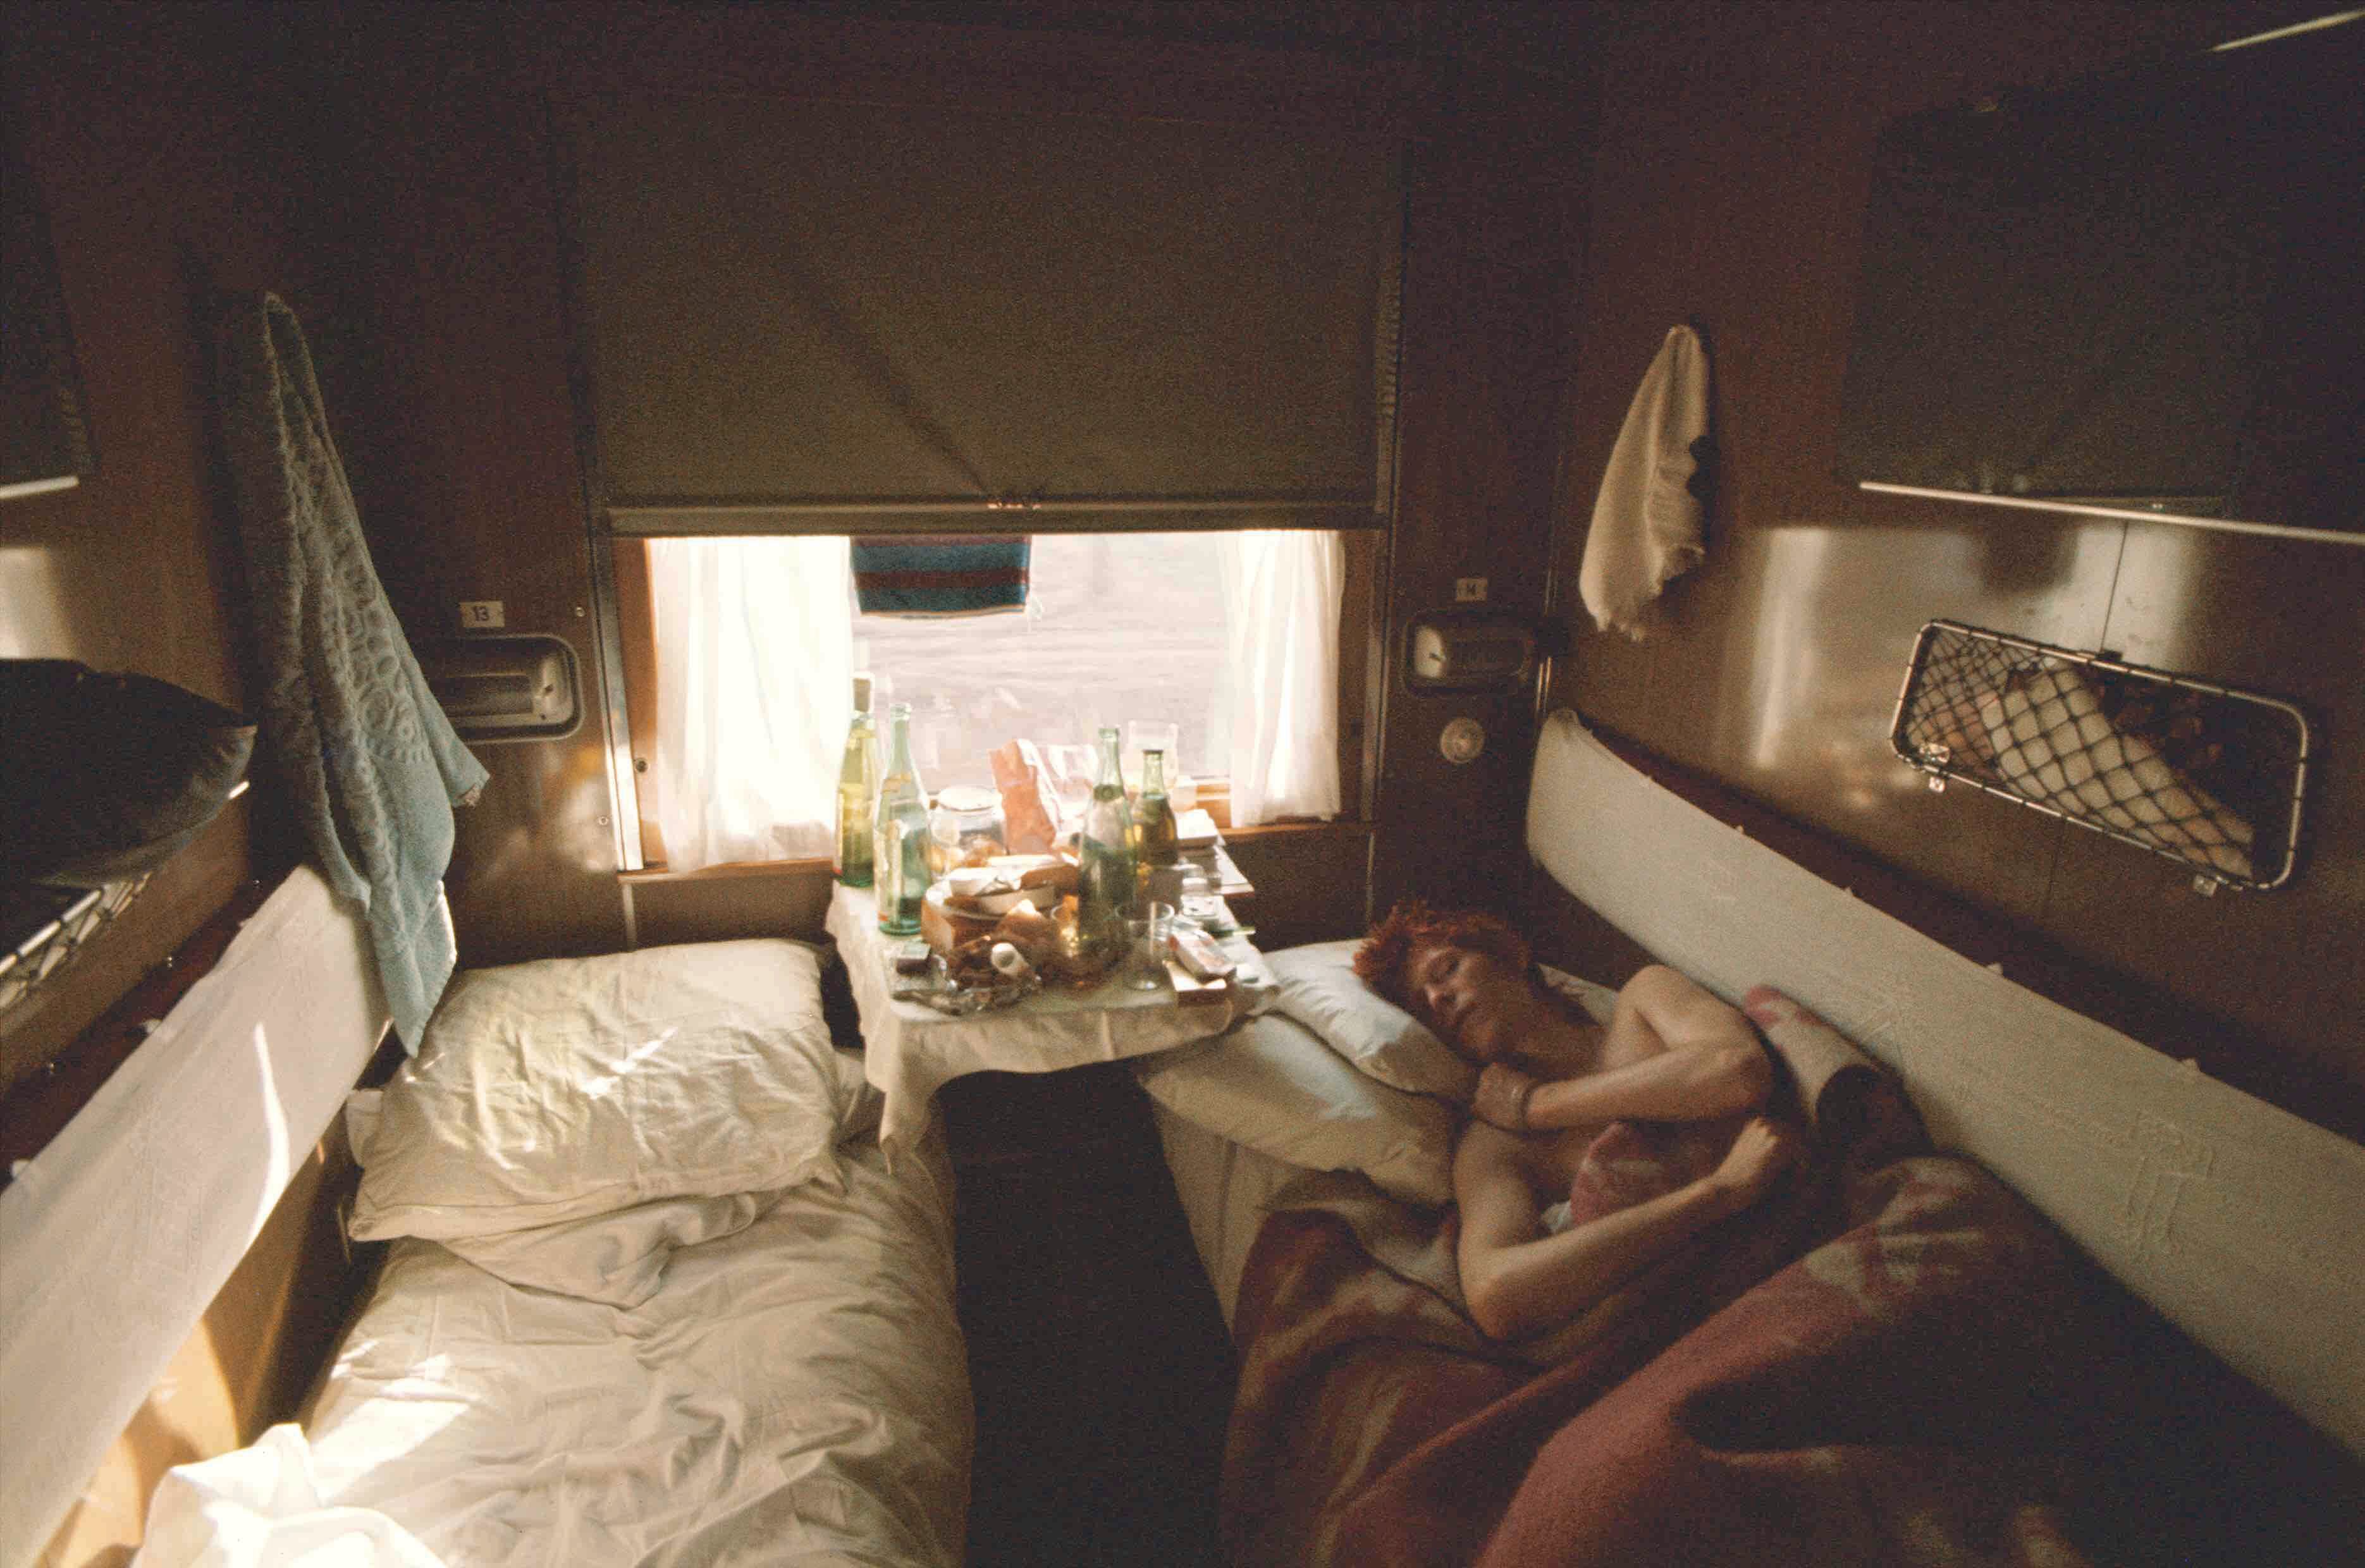 Bowie durmiendo la siesta en el tren transiberiano después de una fiesta. Era 1973.